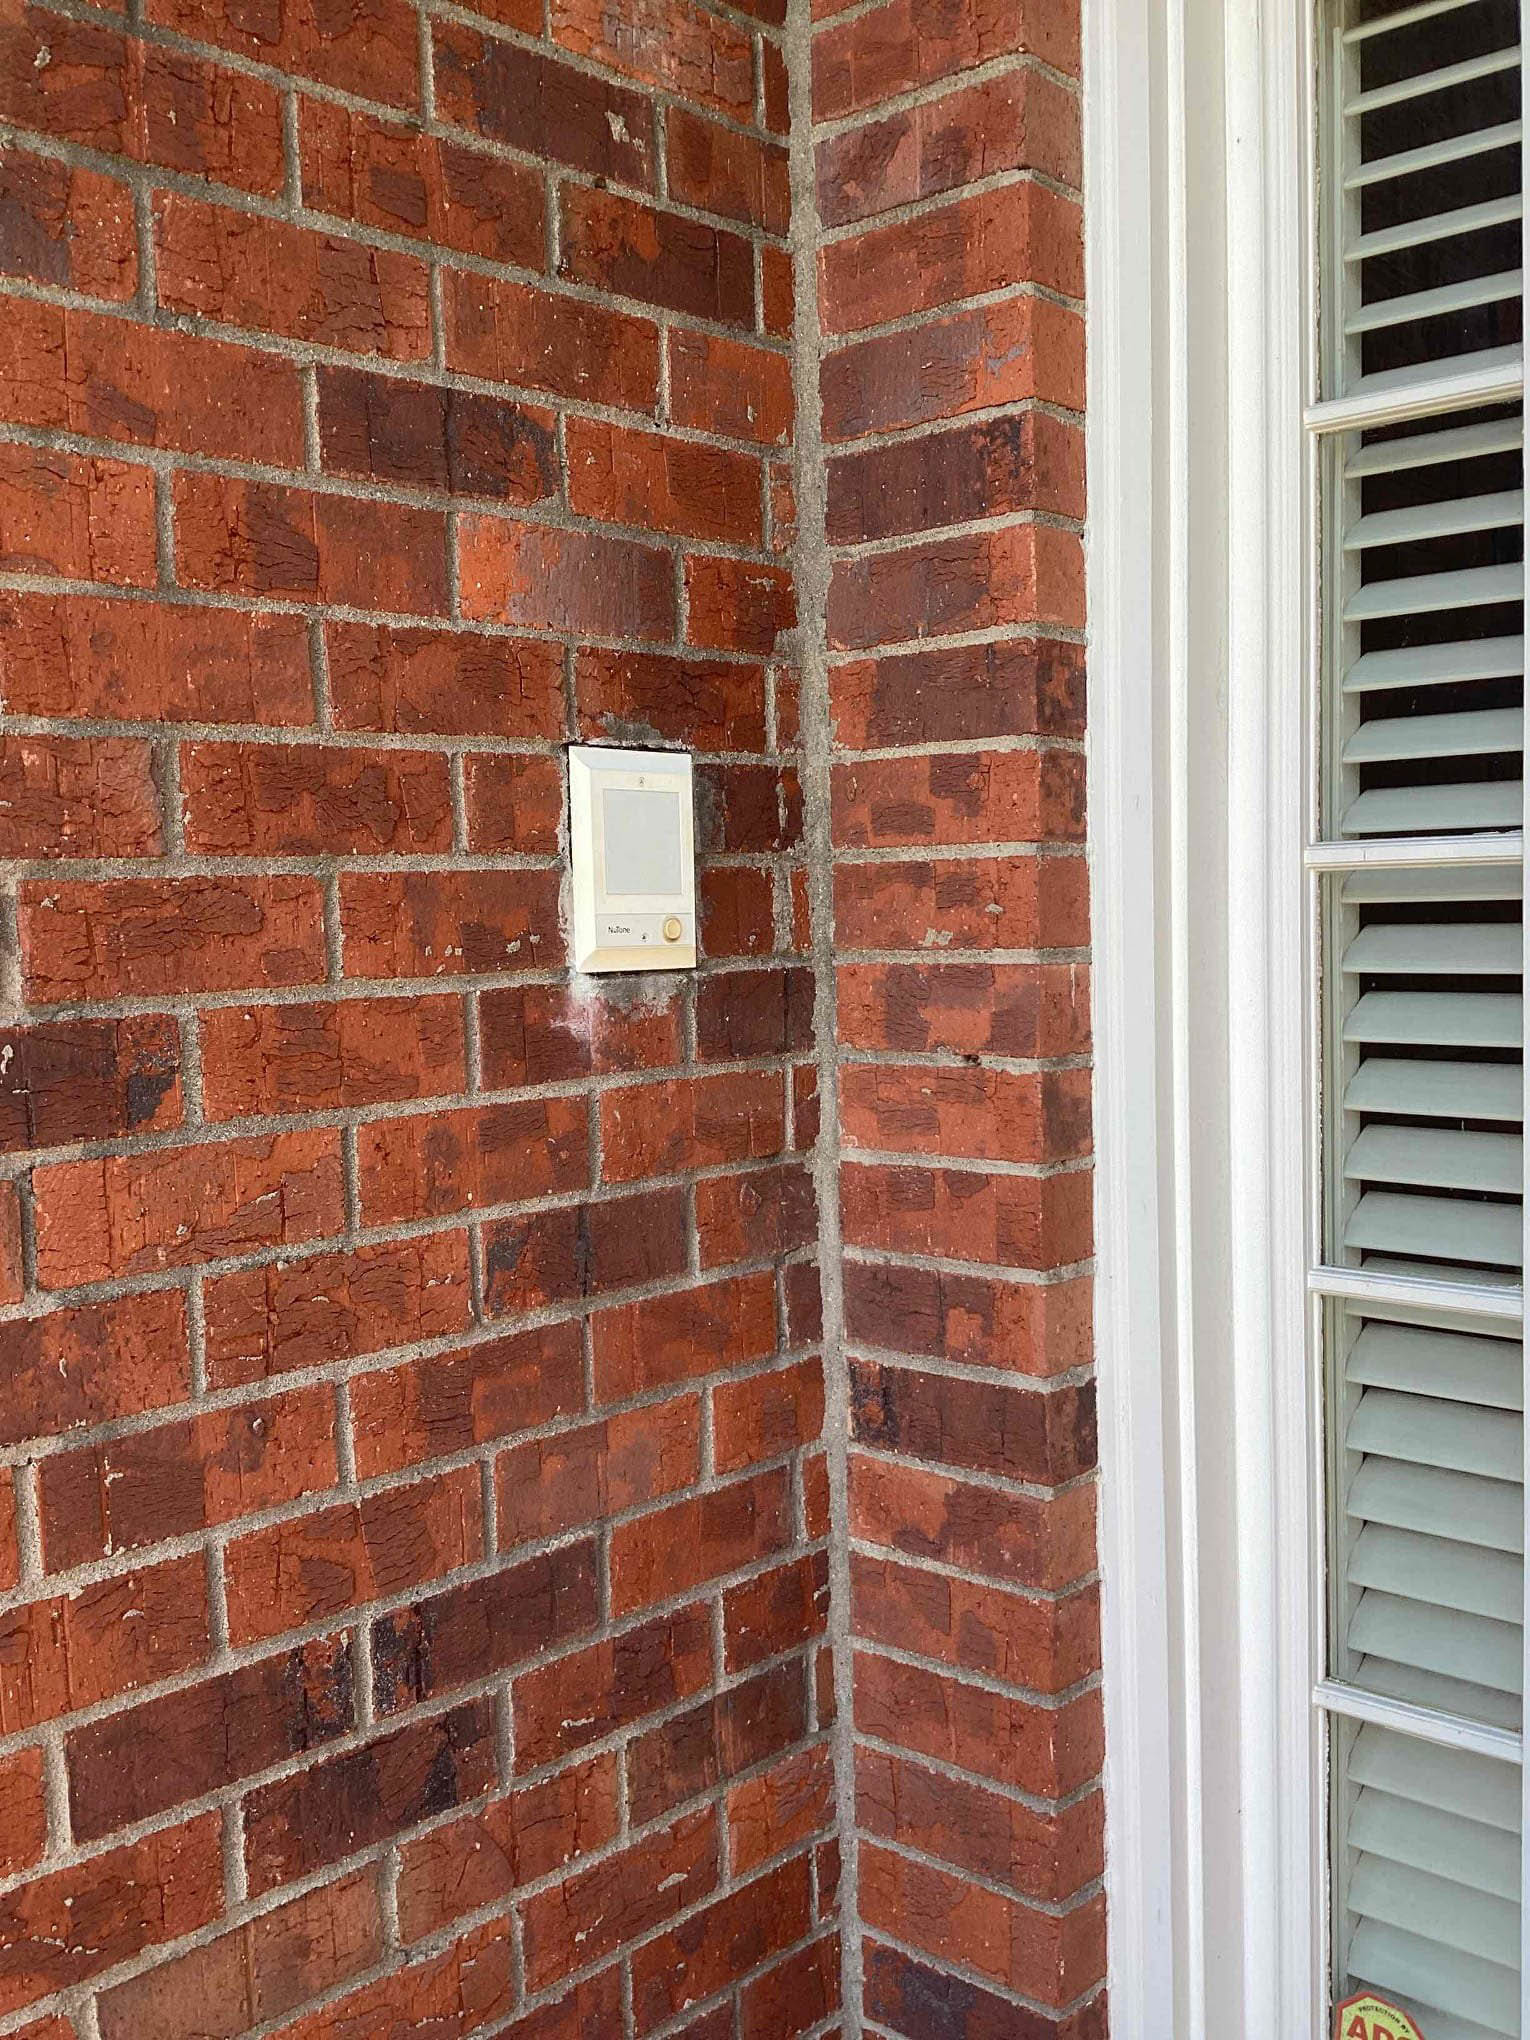 Doorbell Install5 Franklin TN 37067 USA 10